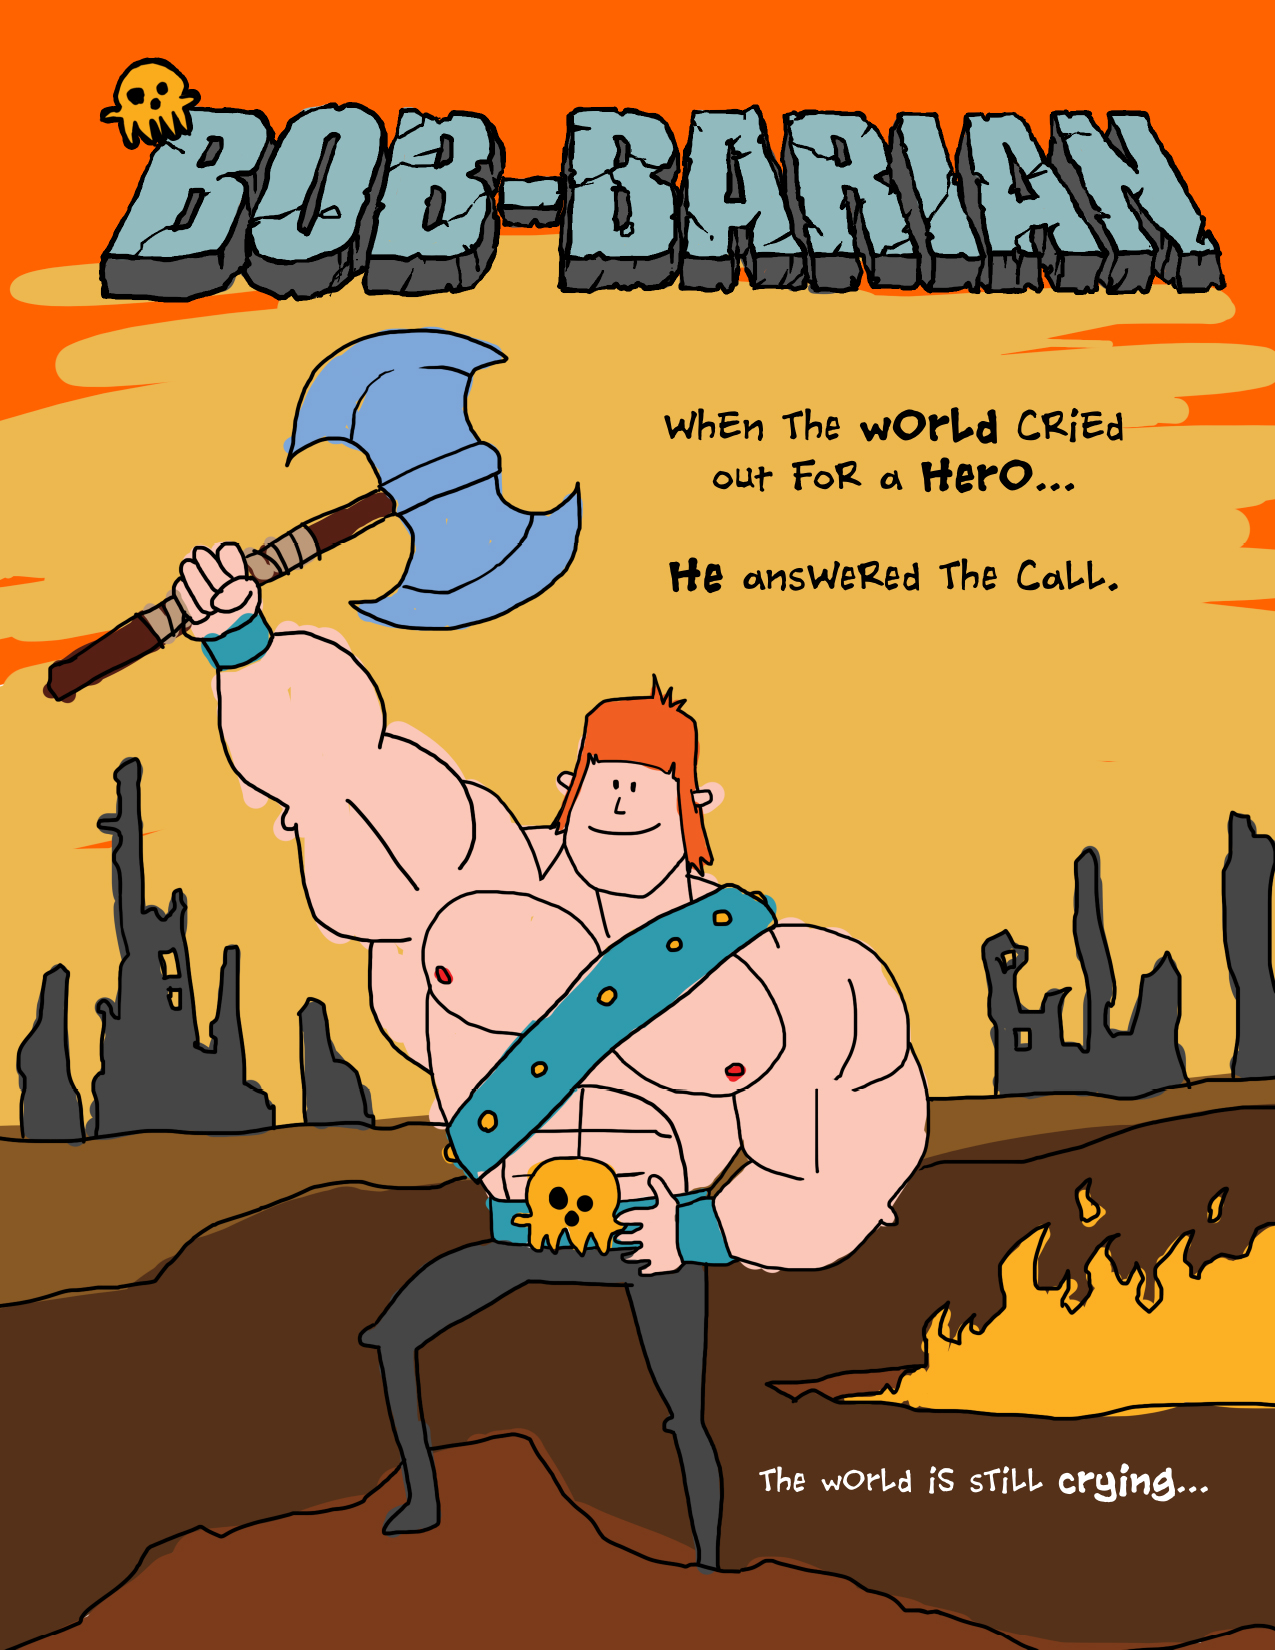 Bob-barian